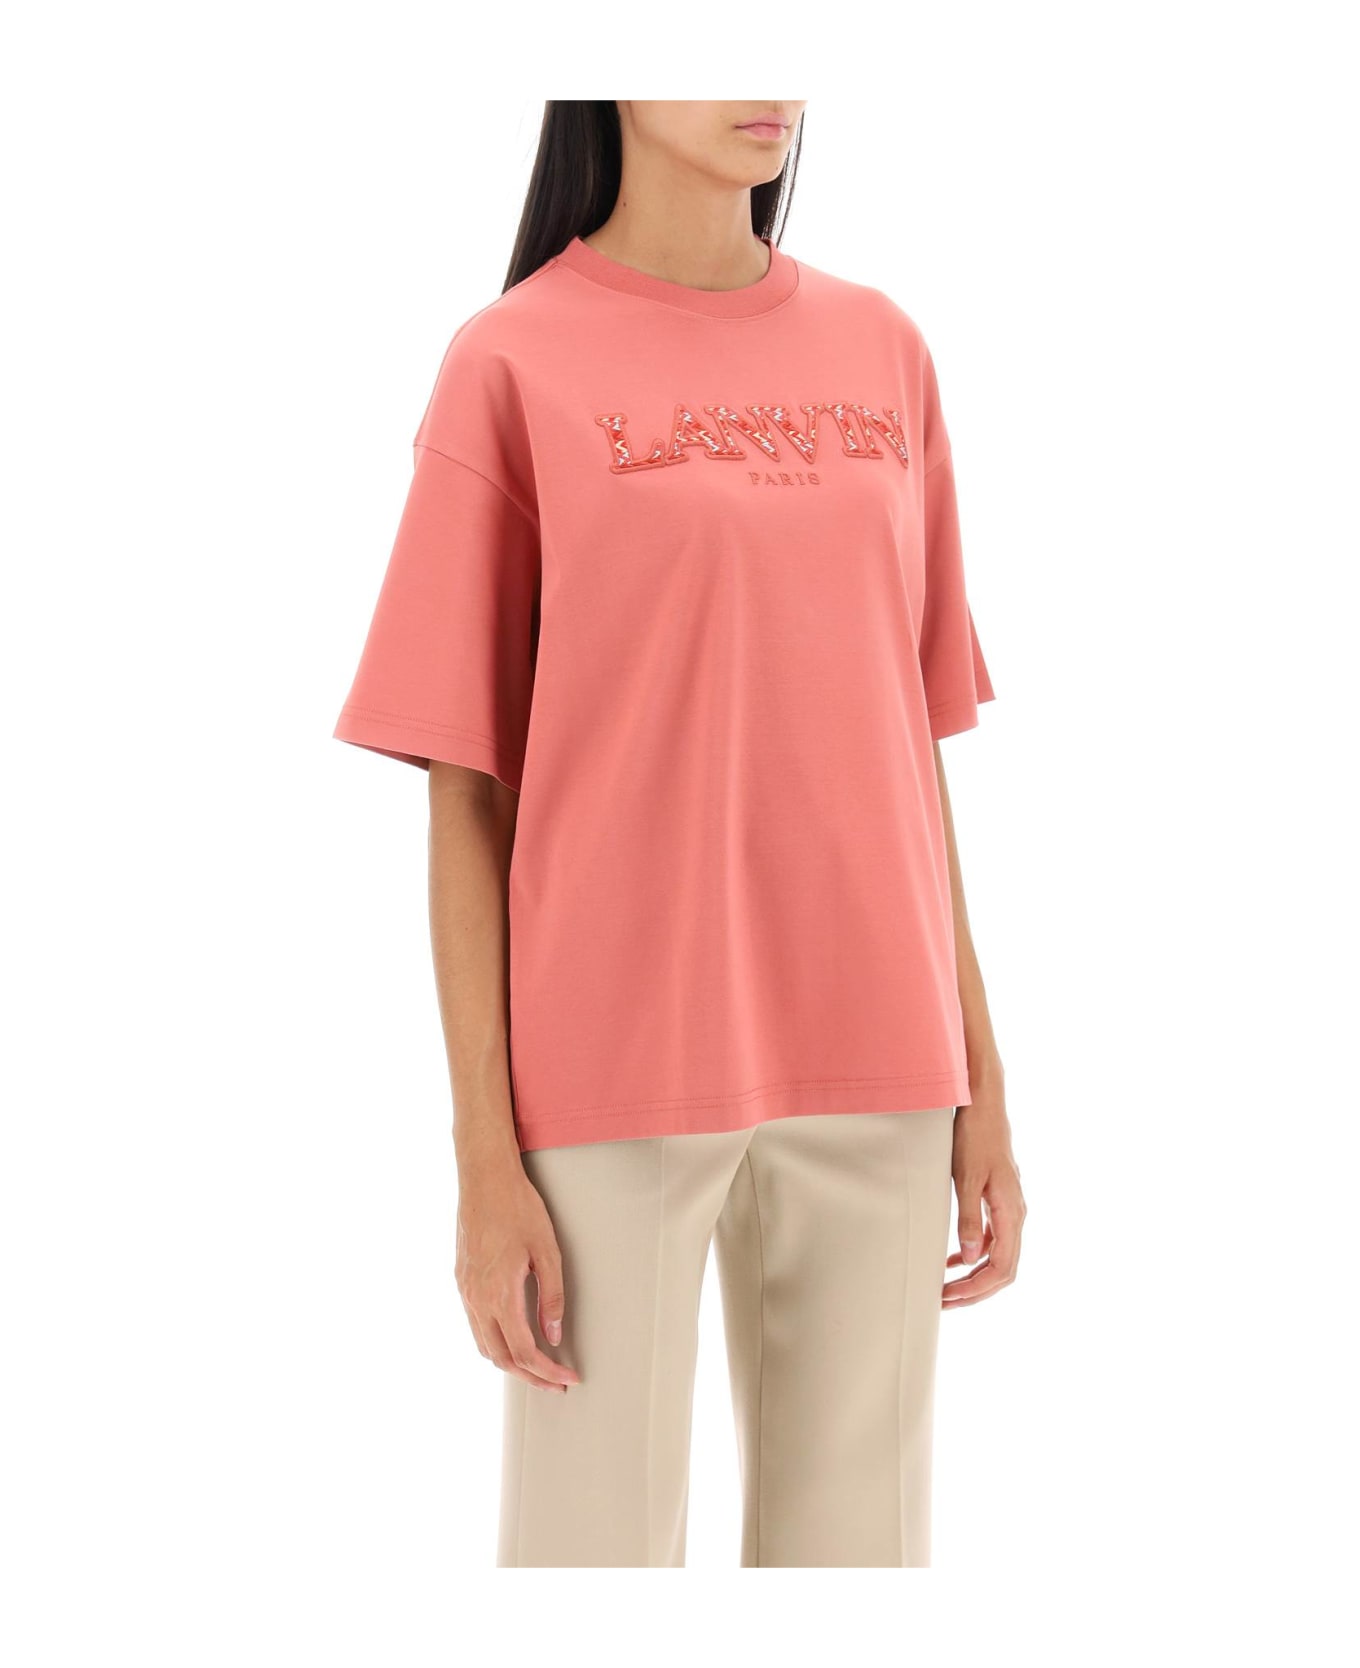 Lanvin Antiqued Pink Cotton Oversize T-shirt - LITCHI Tシャツ